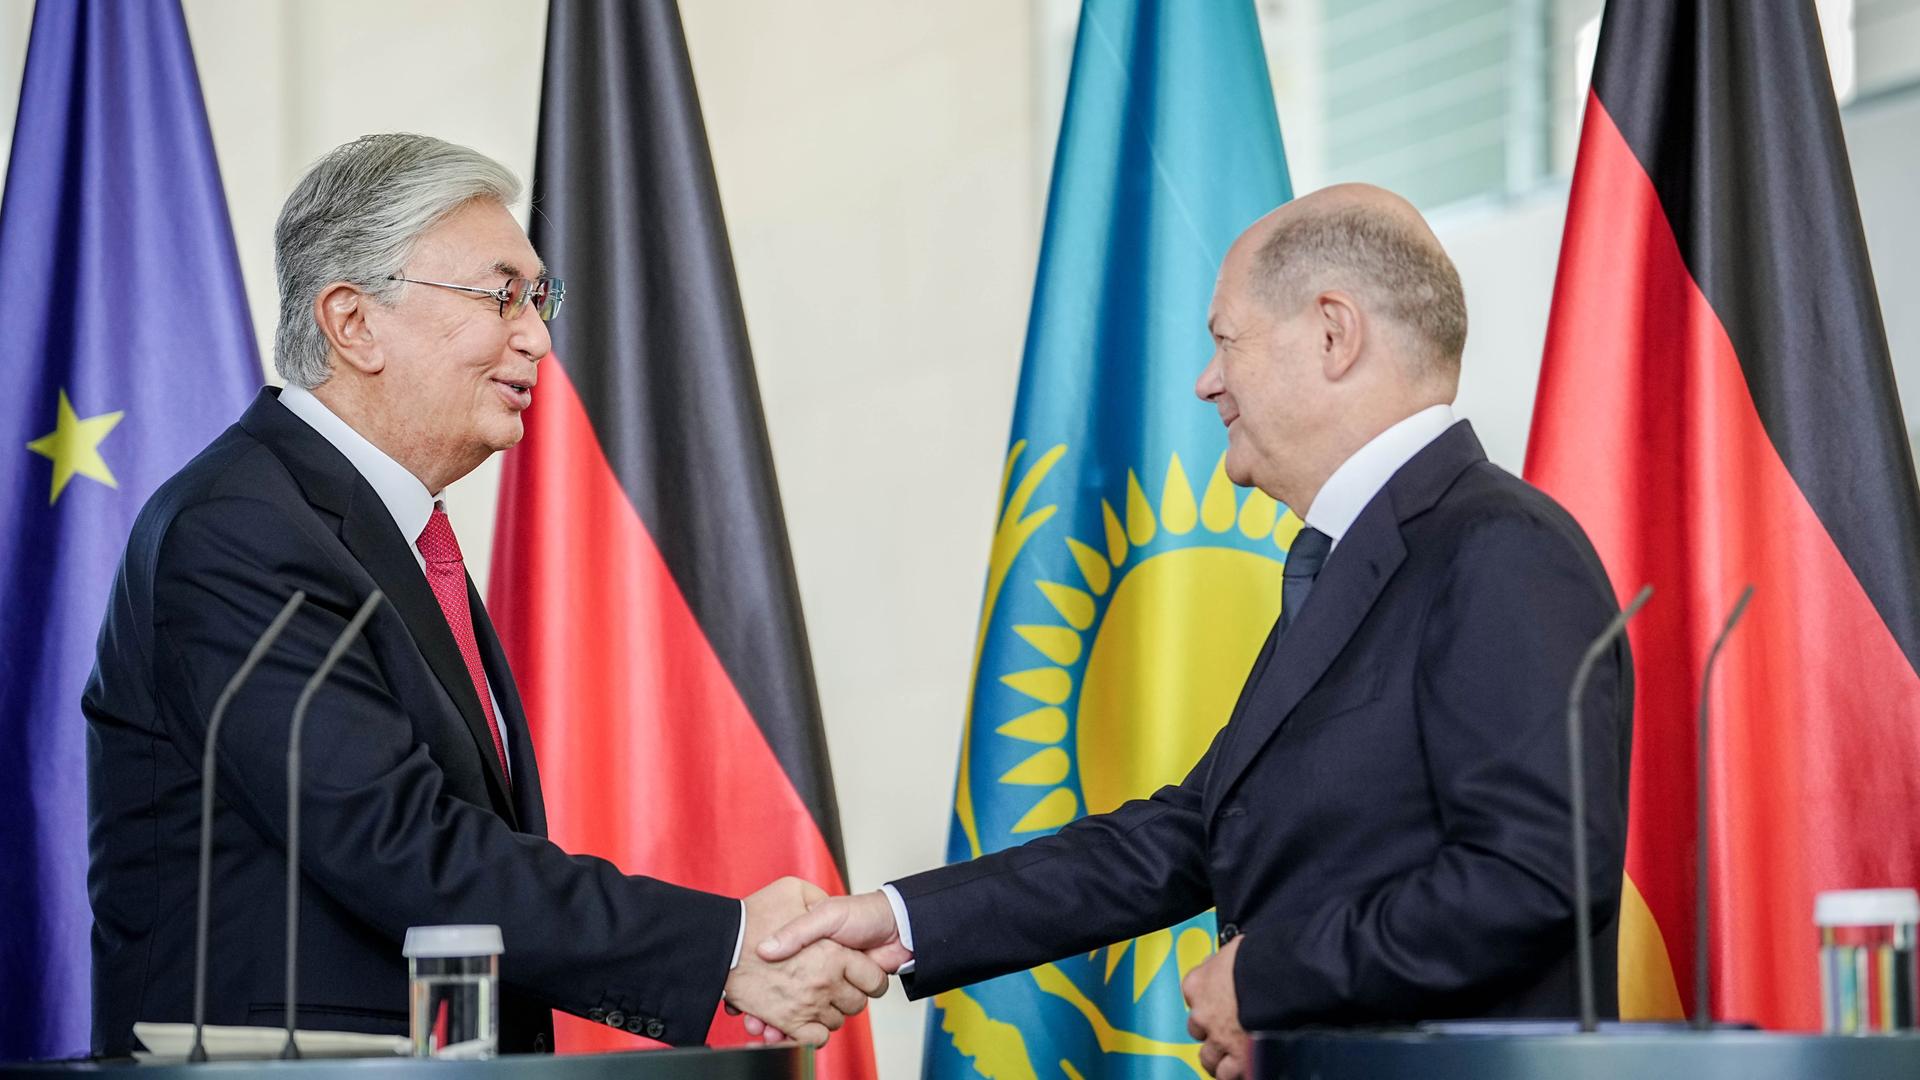 Bundeskanzler Olaf Scholz und der kassachische Präsident Kassim-Schomart Tokajew geben sich während einer Pressekonferenz die Hand, im Hintergrund sind die Flaggen Deutschlands, Kasachstans und der EU aufgestellt.